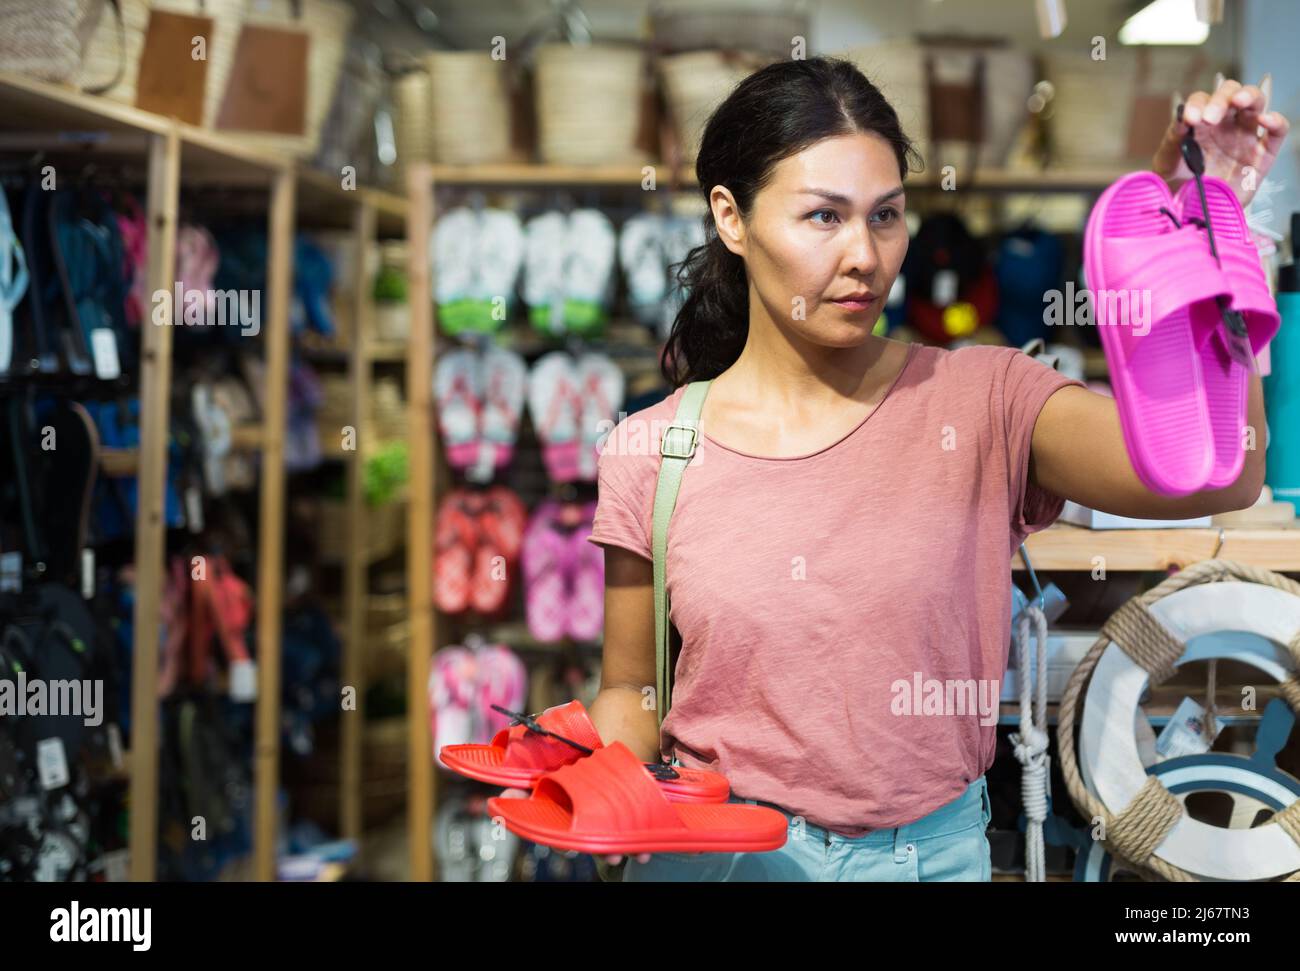 Weibliche Shopper wählt Strandflipflops im Baumarkt Stockfoto